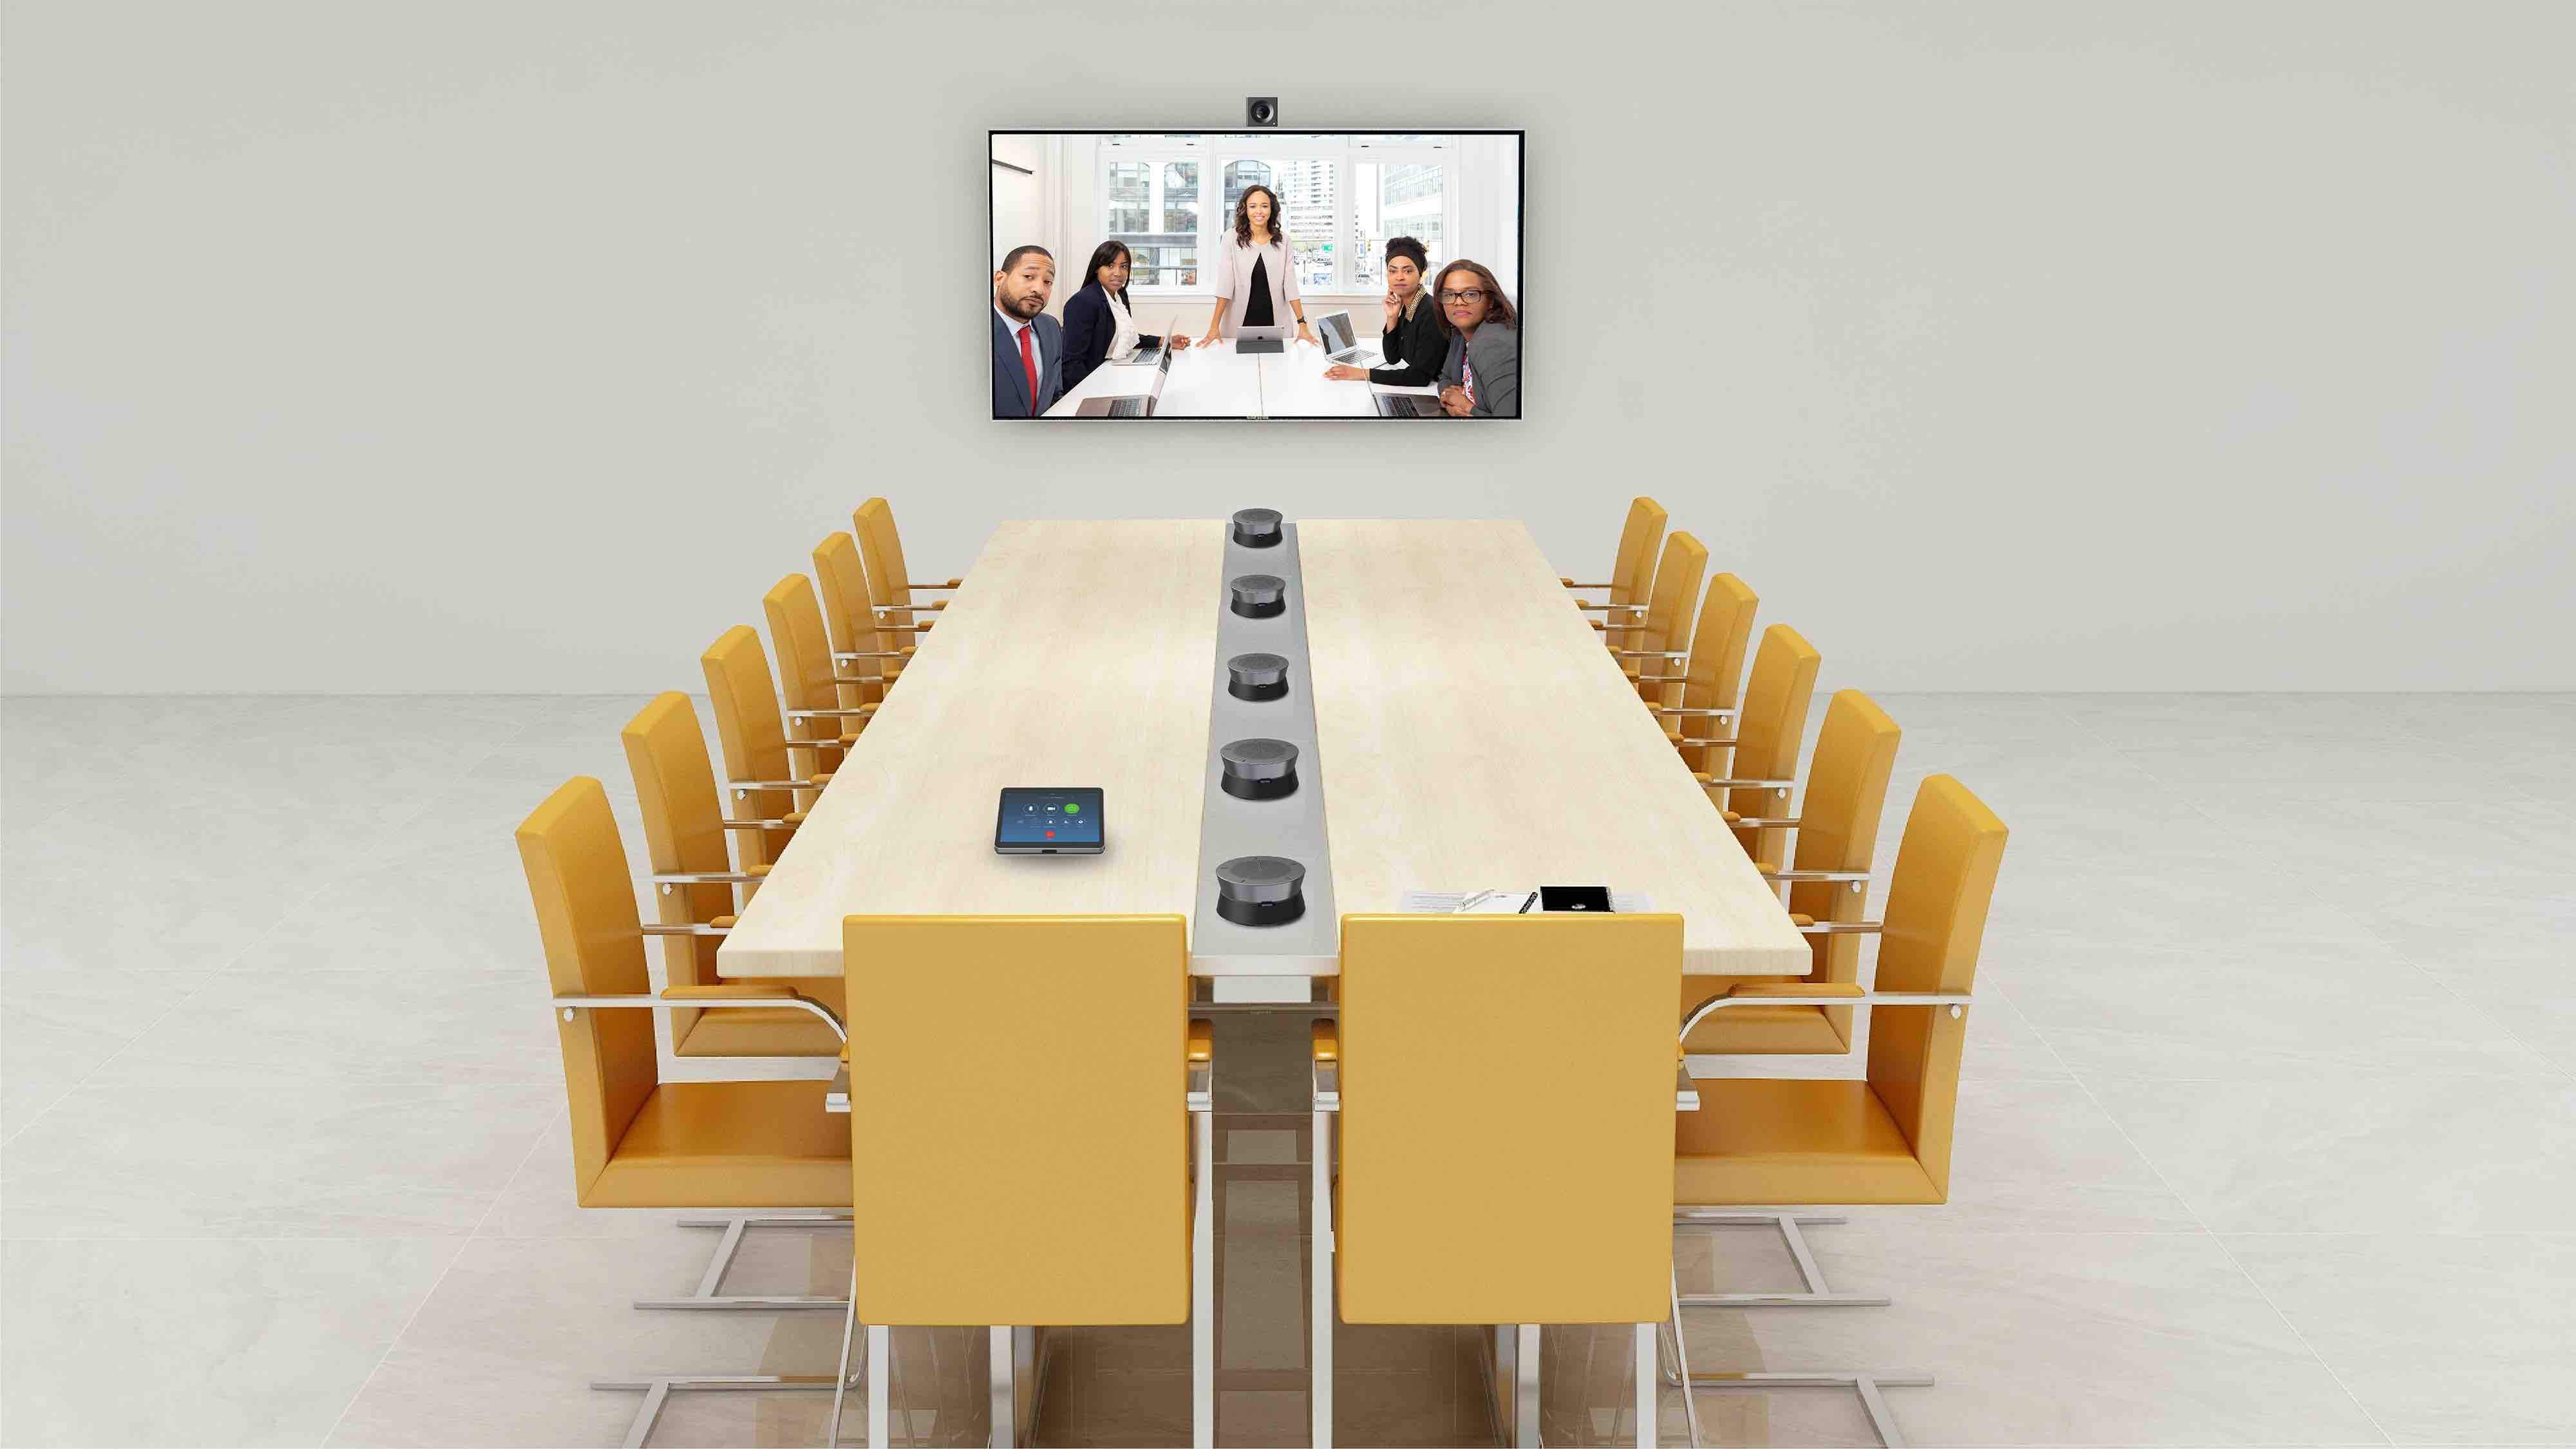 耳目达大型视频会议室单显示终端解决方案